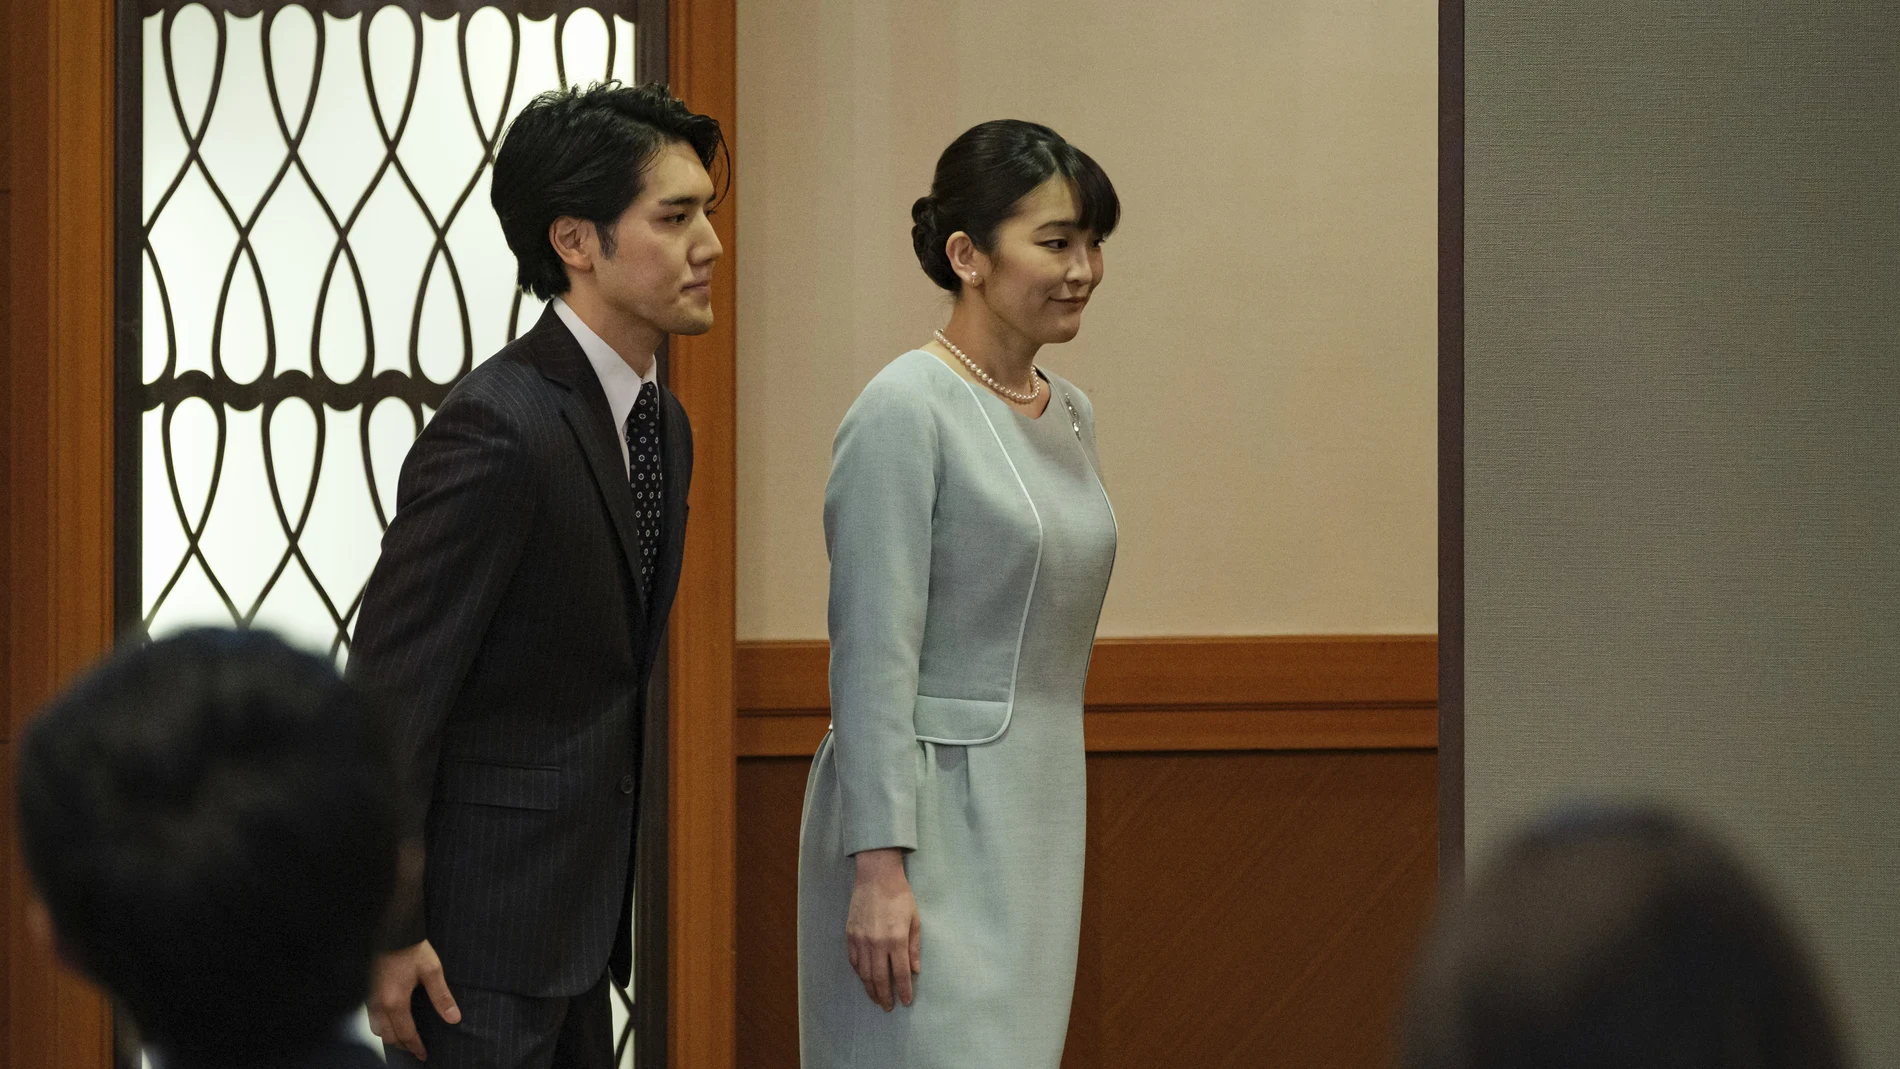 La princesa Mako y el plebeyo Kei Komuro se han casado en una ceremonia civil y sin ningún formalismo. (Nicolas Datiche/Pool Photo via AP)